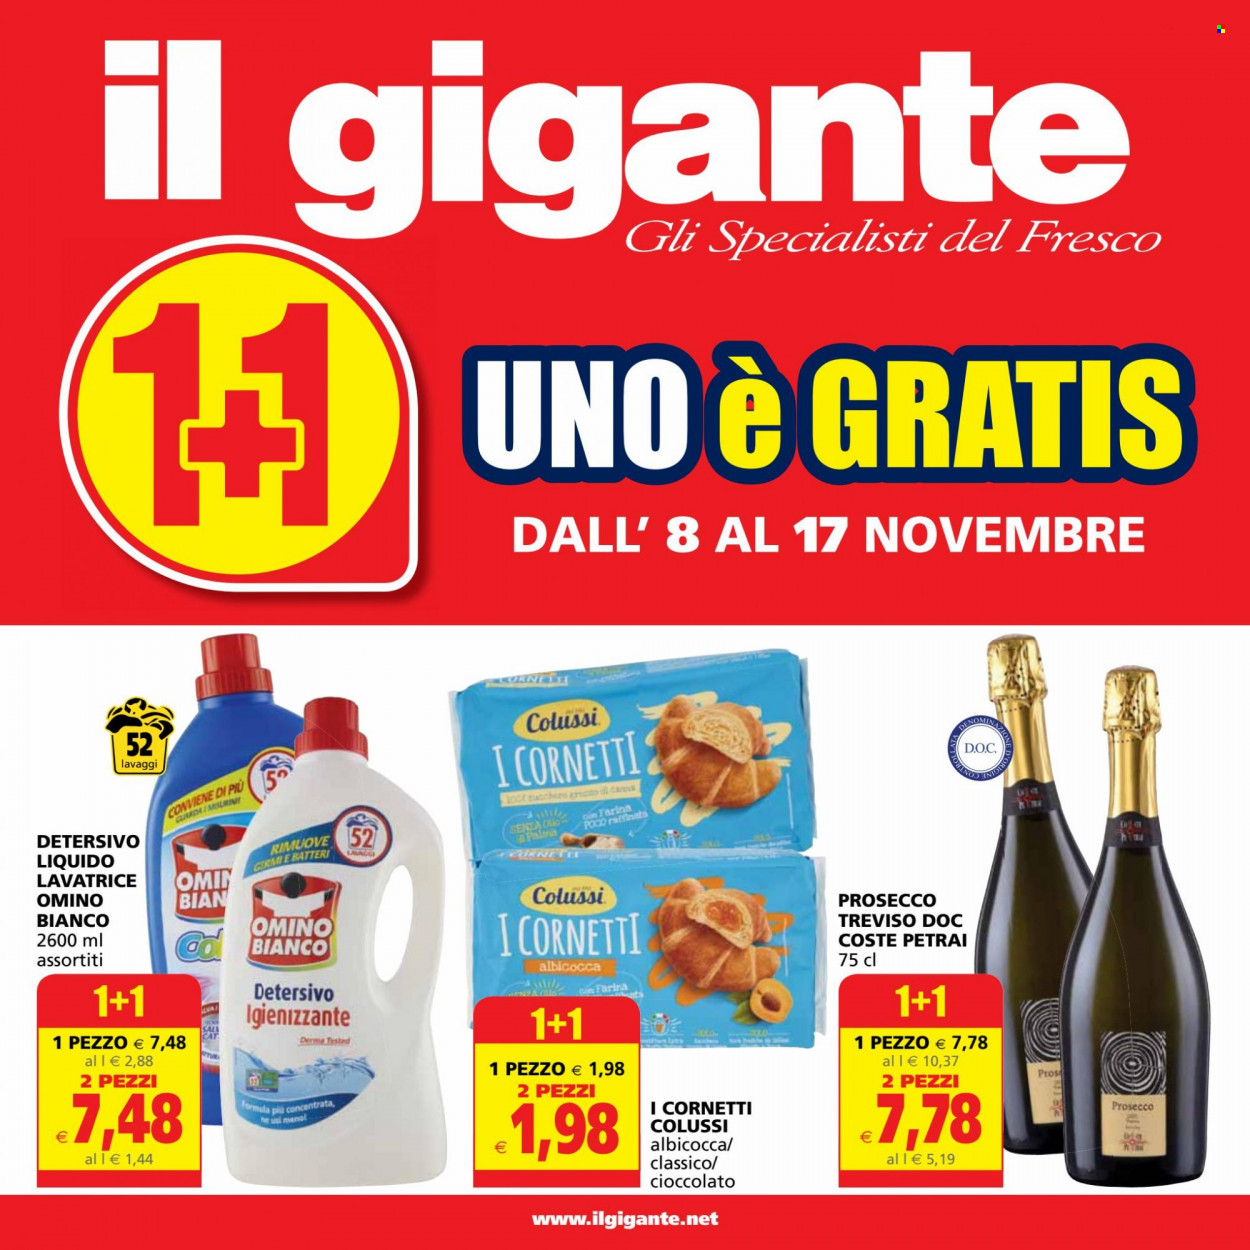 thumbnail - Volantino Il Gigante - 8/11/2021 - 17/11/2021 - Prodotti in offerta - croissant, cioccolato, Prosecco, detersivo liquido per lavatrice, Omino Bianco. Pagina 1.